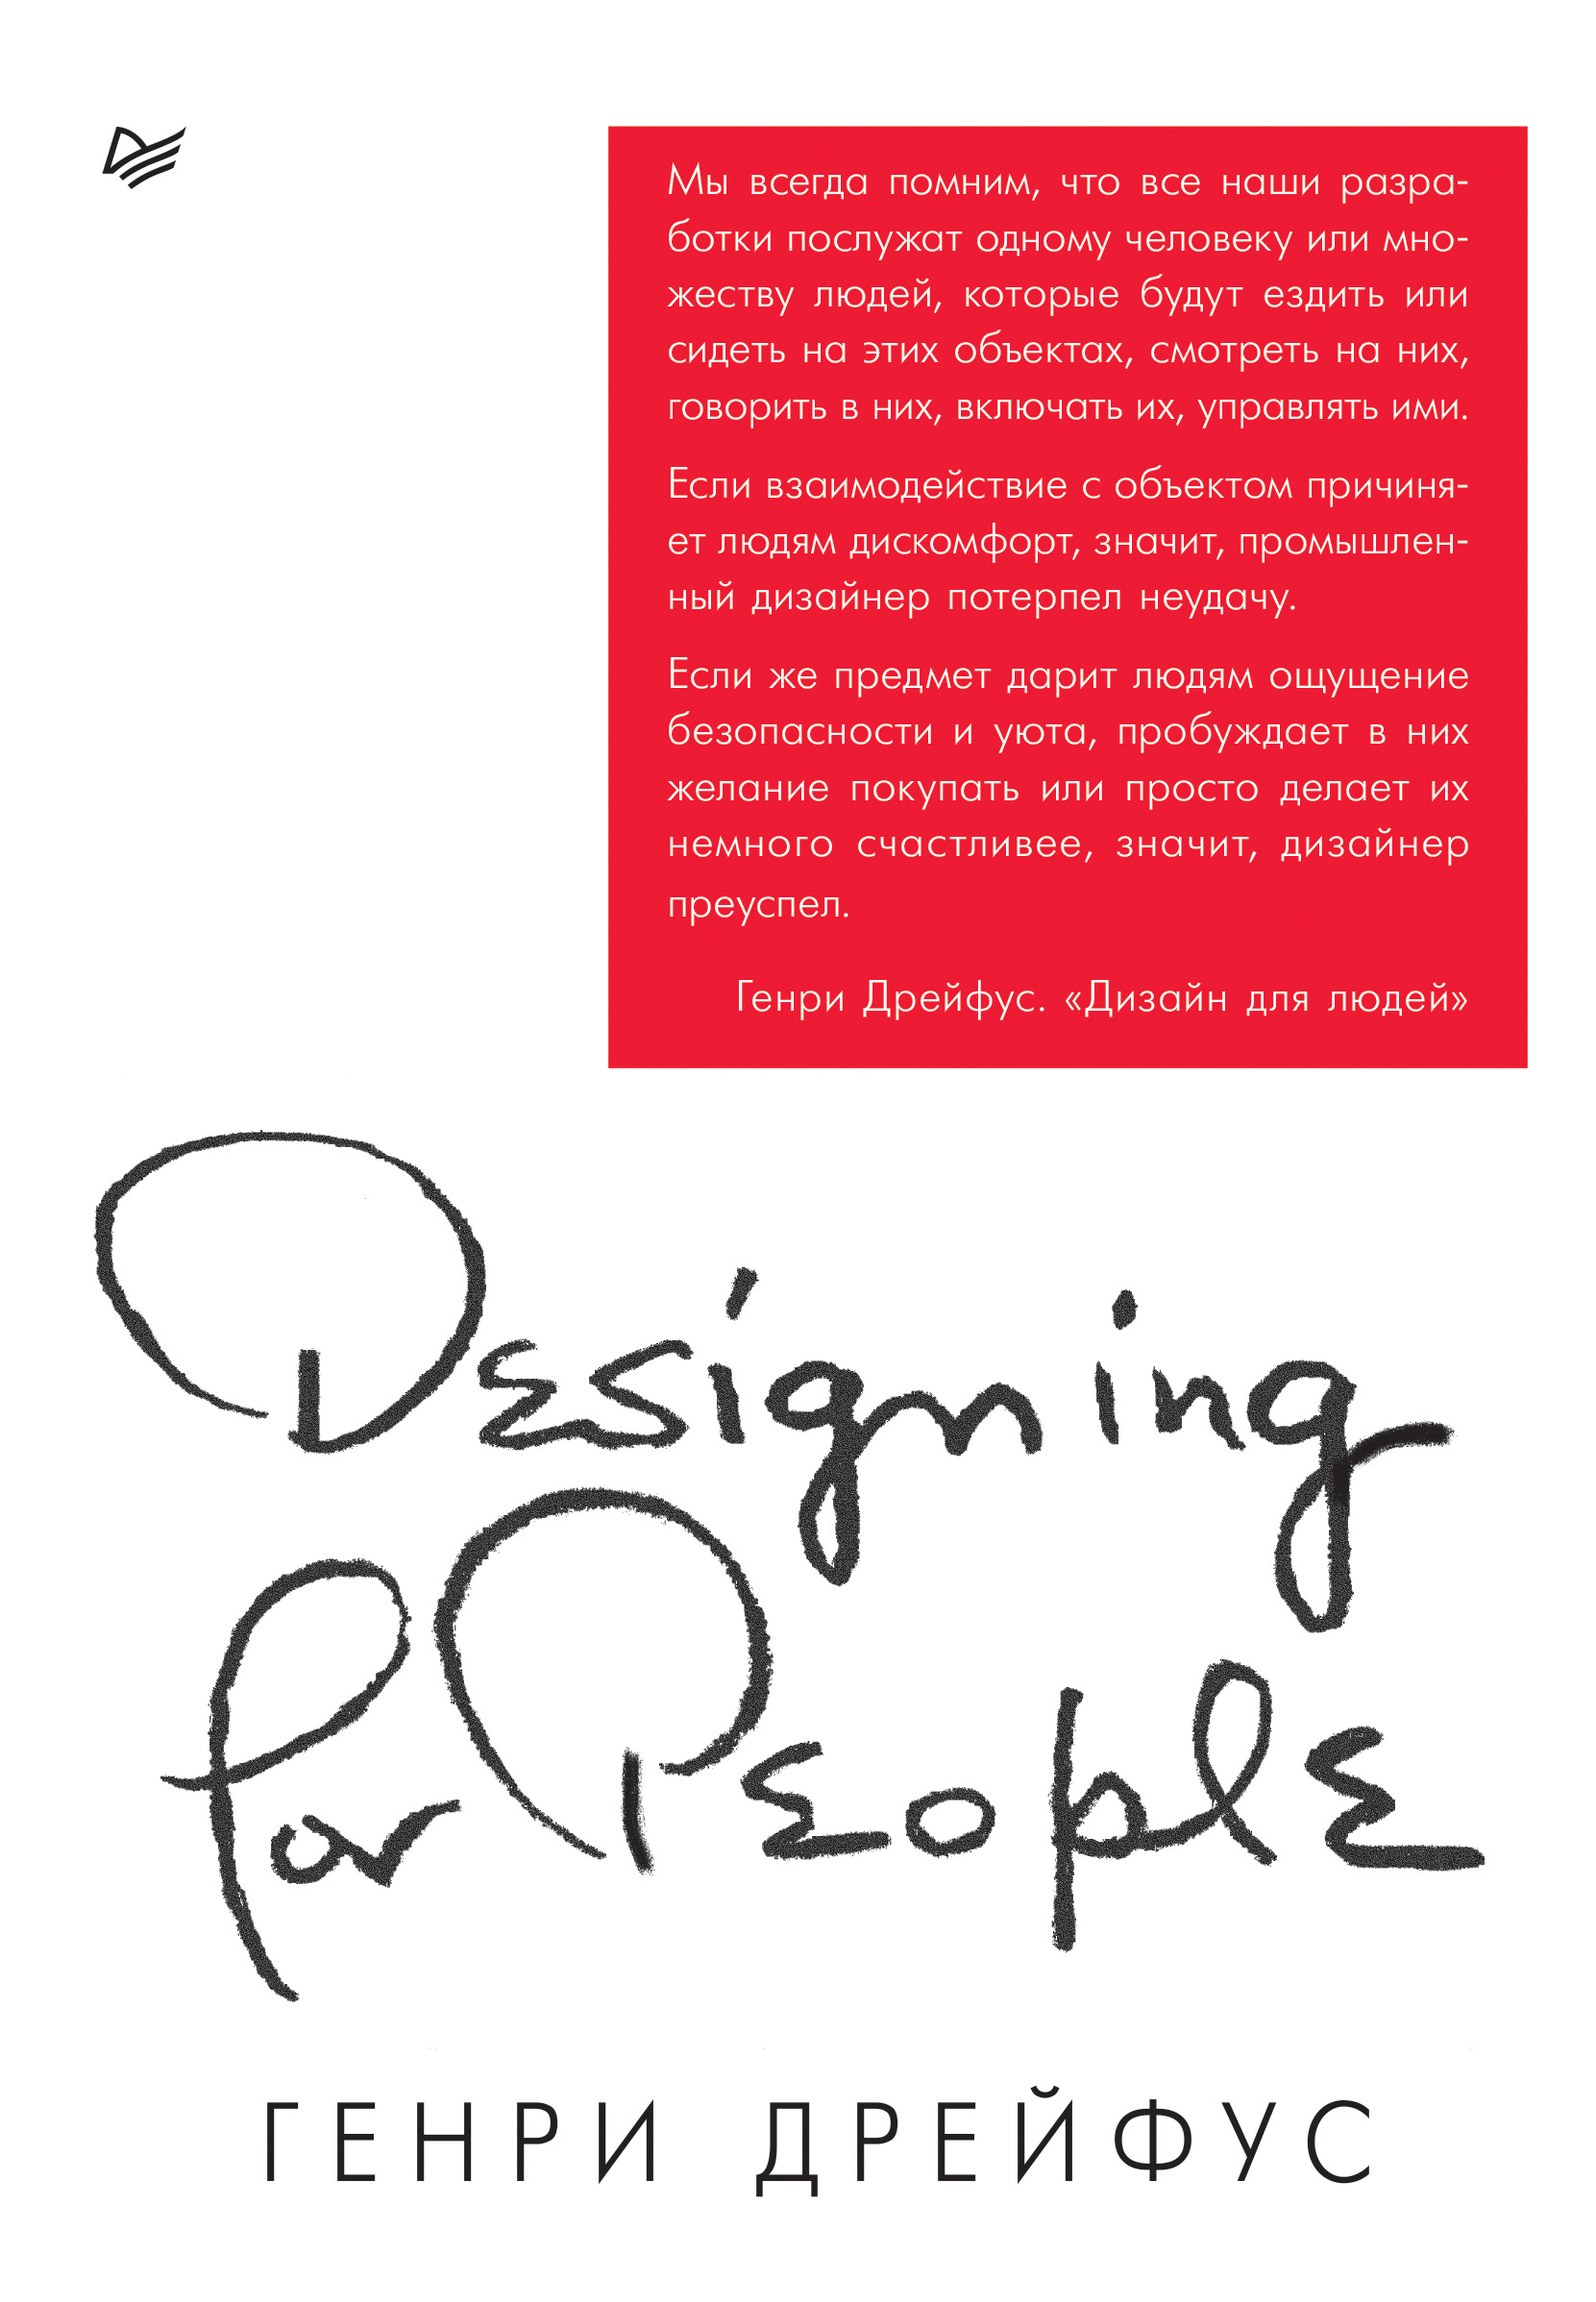 Дрейфус Генри Дизайн для людей. Принципы промышленного дизайна дрейфус сьюлетт компьютерный андеграунд